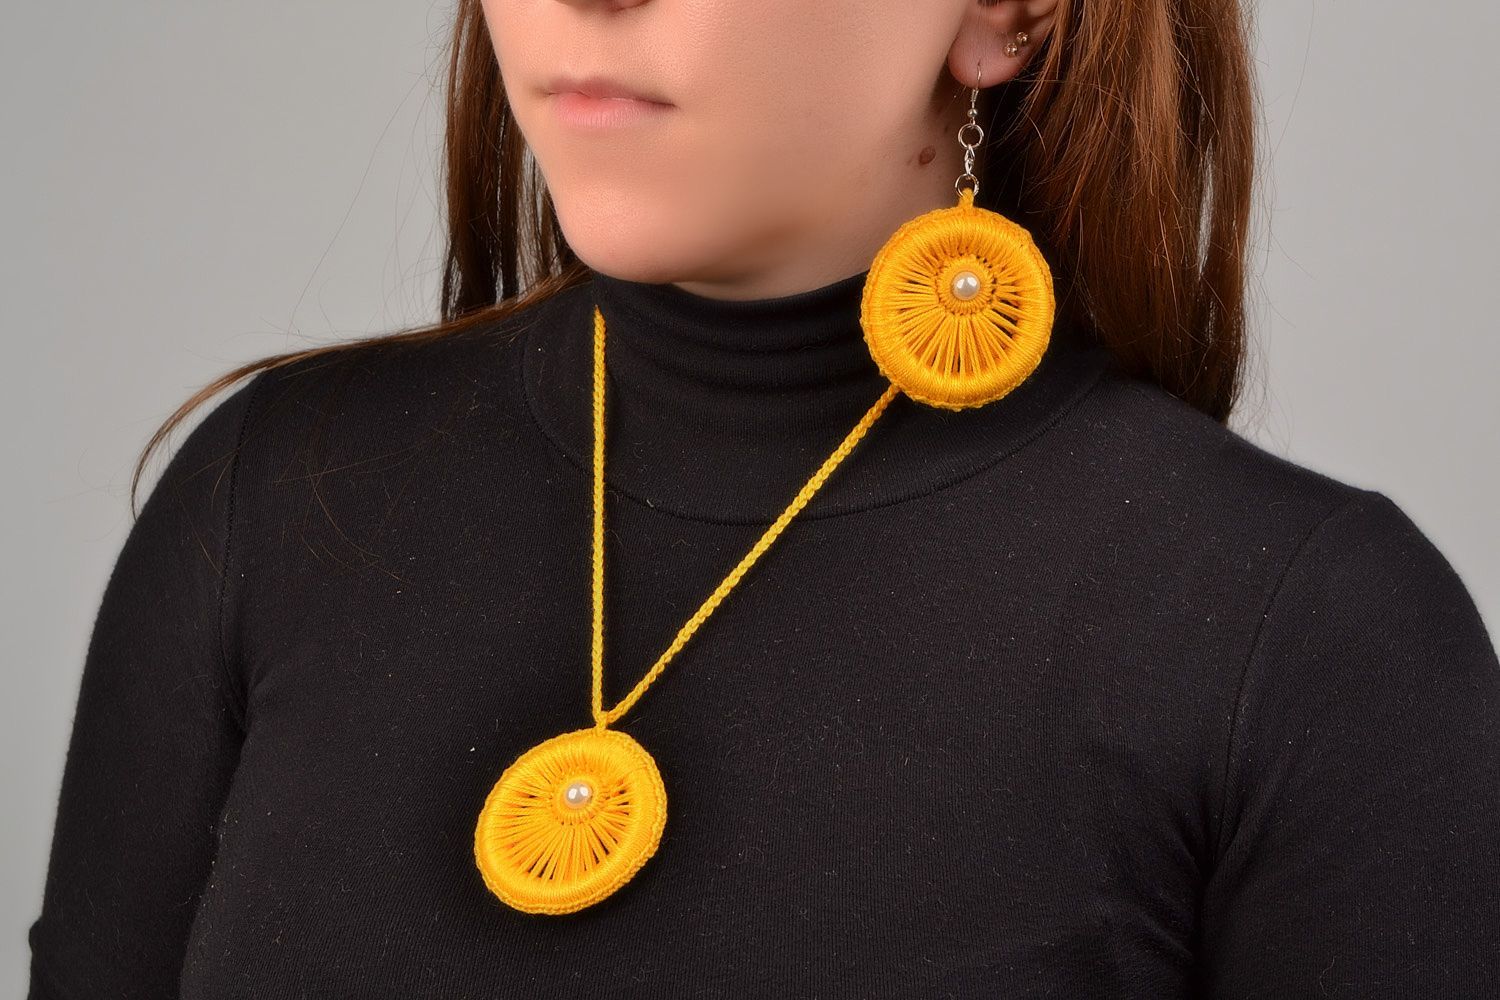 Textil Schmuckset Lange Ohrringe und 
Anhänger aus Fäden geflochten in Gelb handmade foto 1